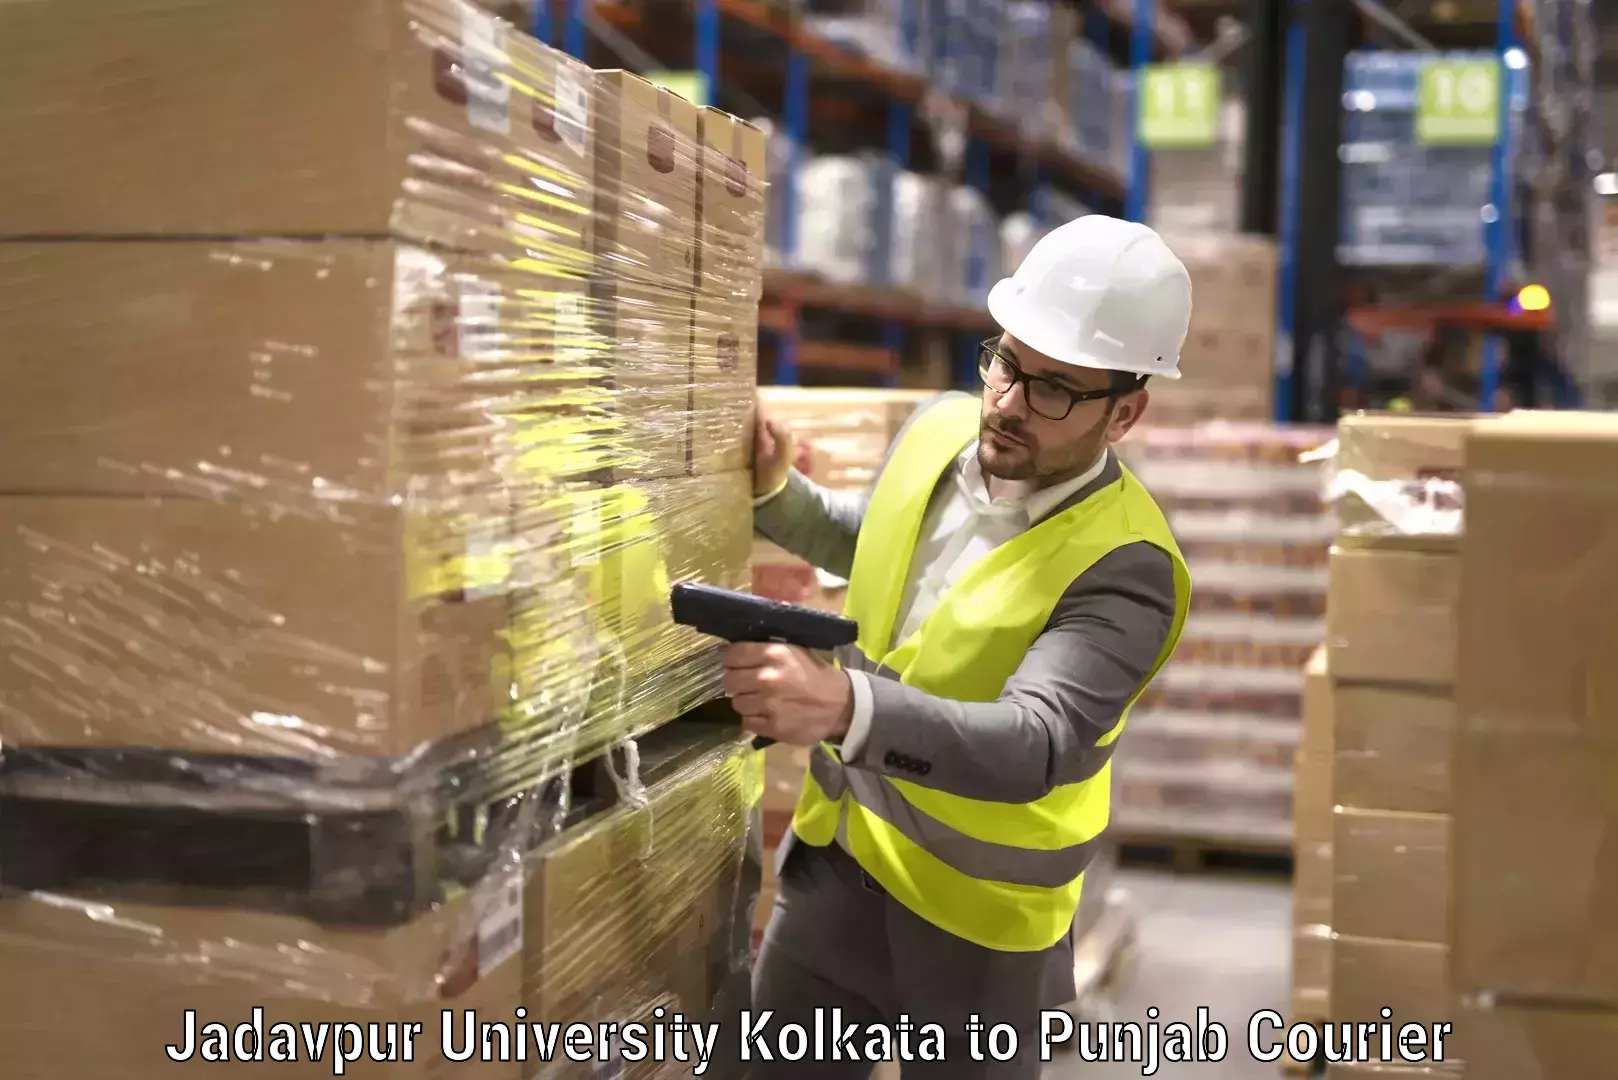 Skilled furniture movers Jadavpur University Kolkata to Punjab